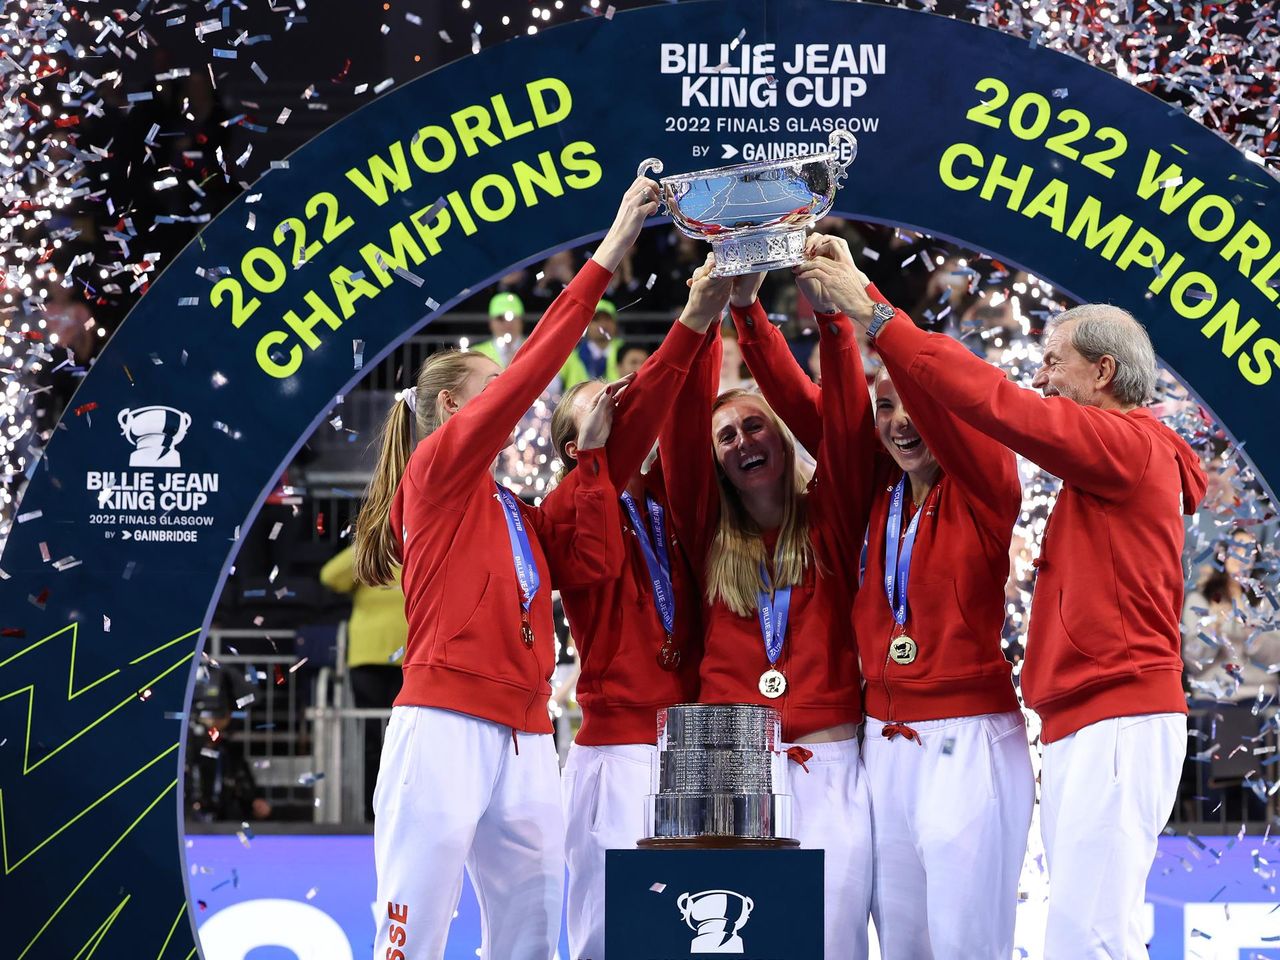 Billie Jean King Cup Schweiz holt Titel gegen Australien - so lief das Finale in Glasgow - Tennis Video